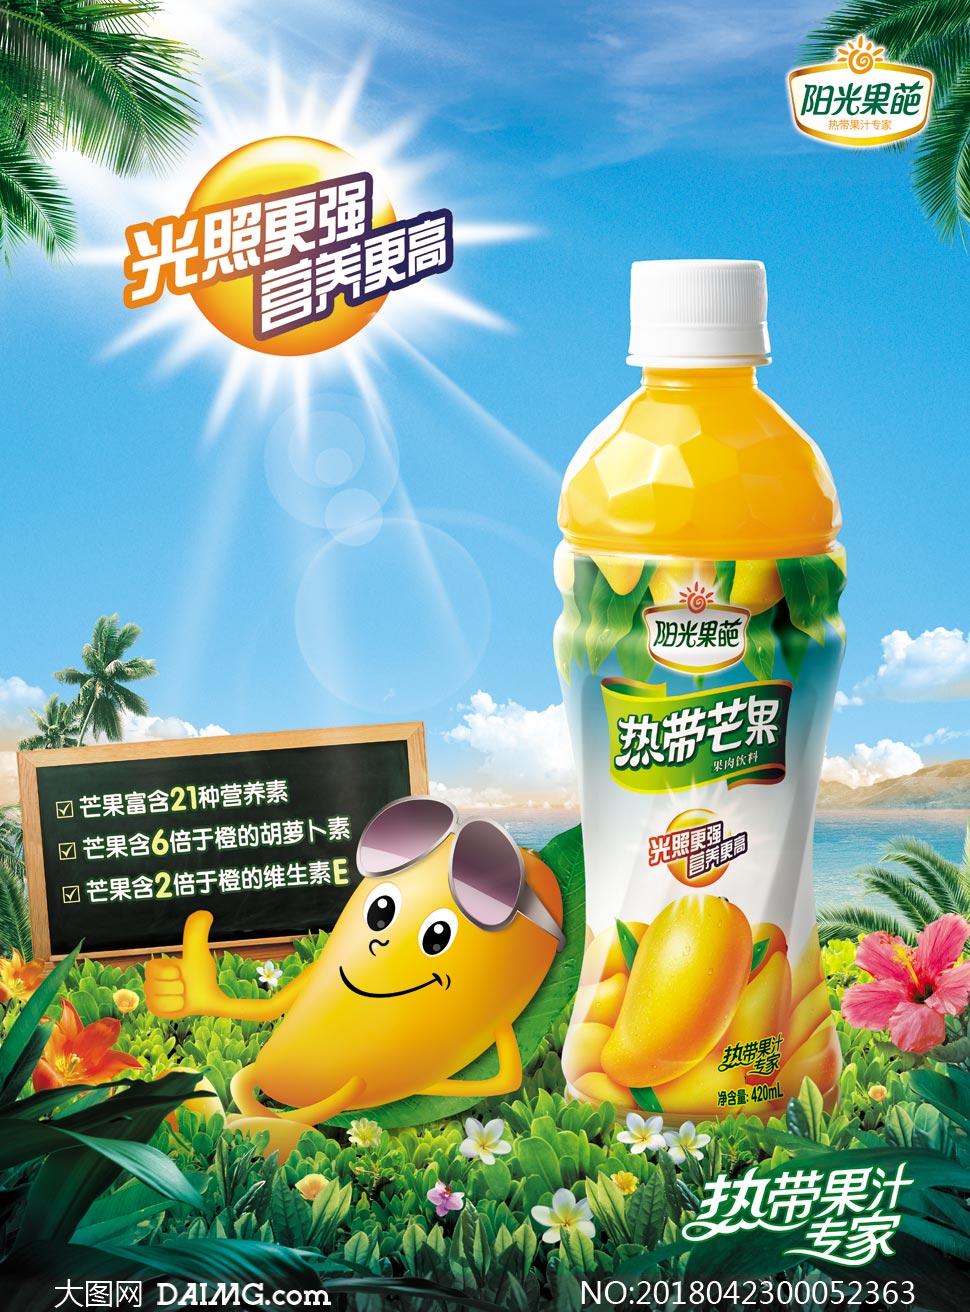 芒果果汁饮料宣传海报设计psd素材